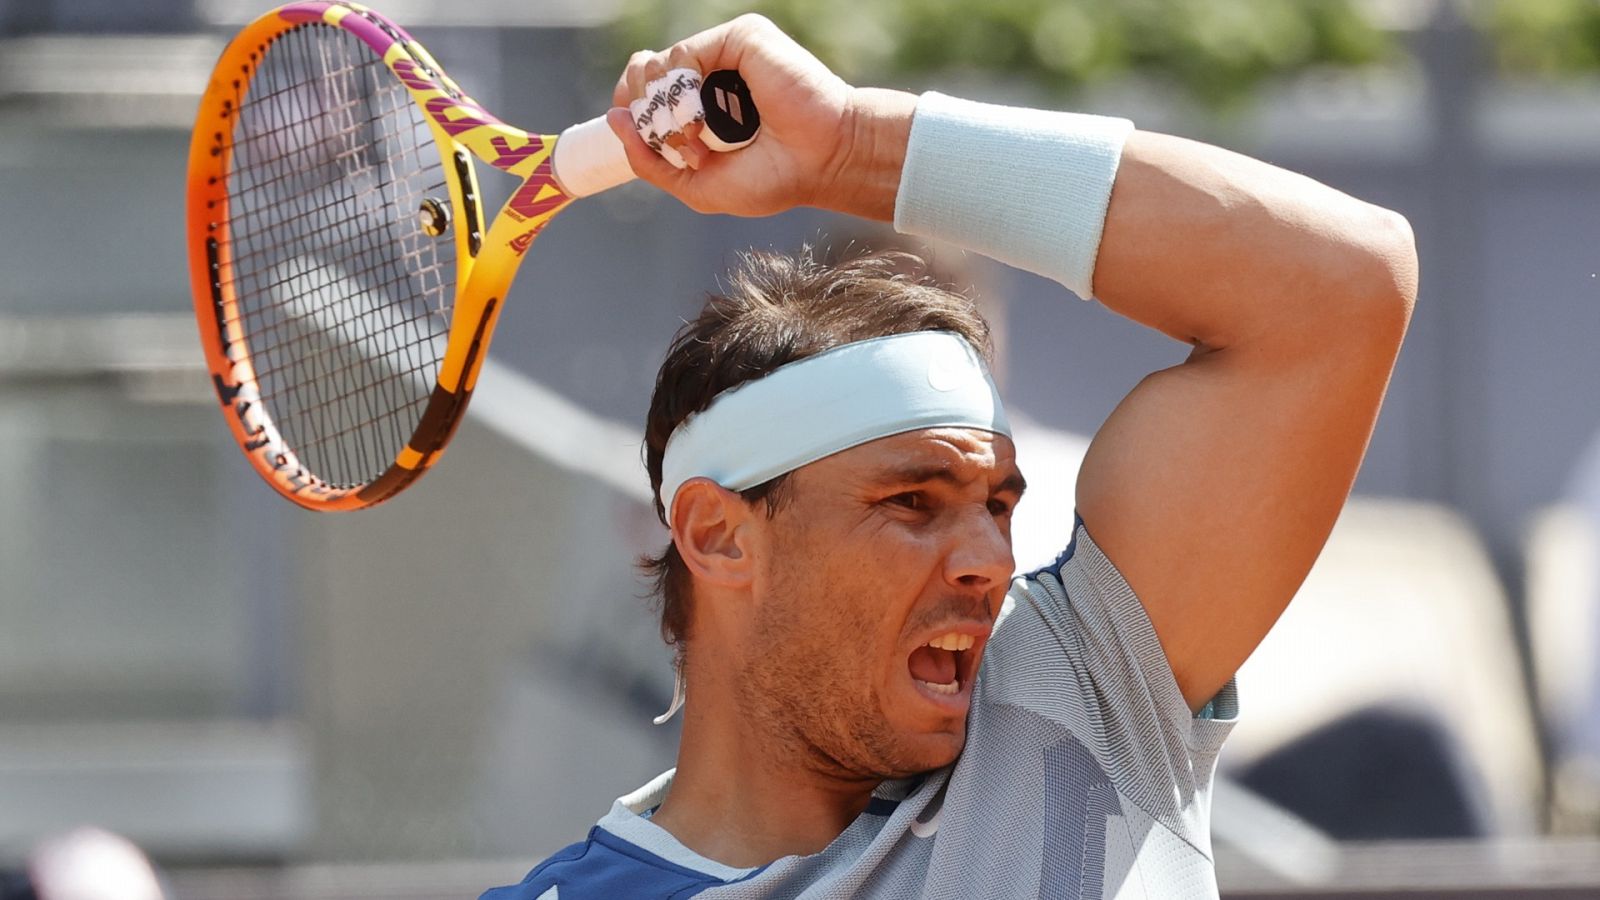 Tenis - ATP Mutua Madrid Open 2022: R. Nadal - D. Goffin - ver ahora